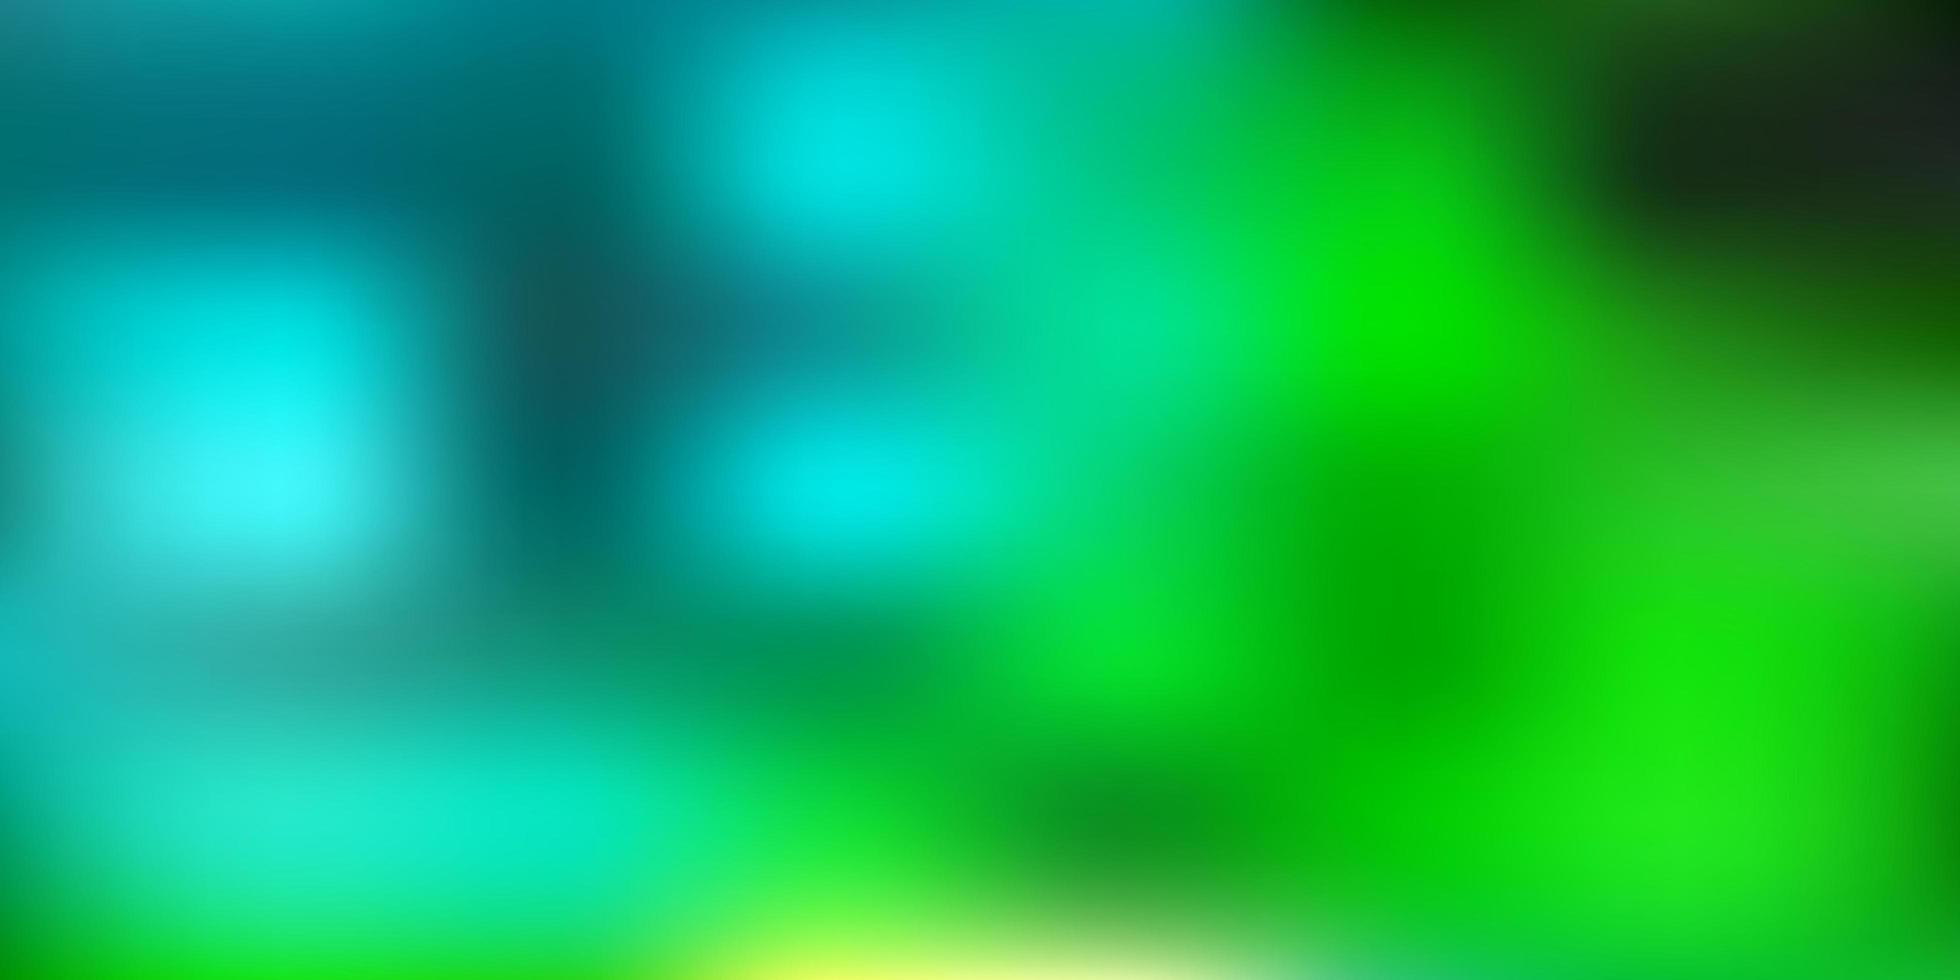 Light blue green vector blurred template